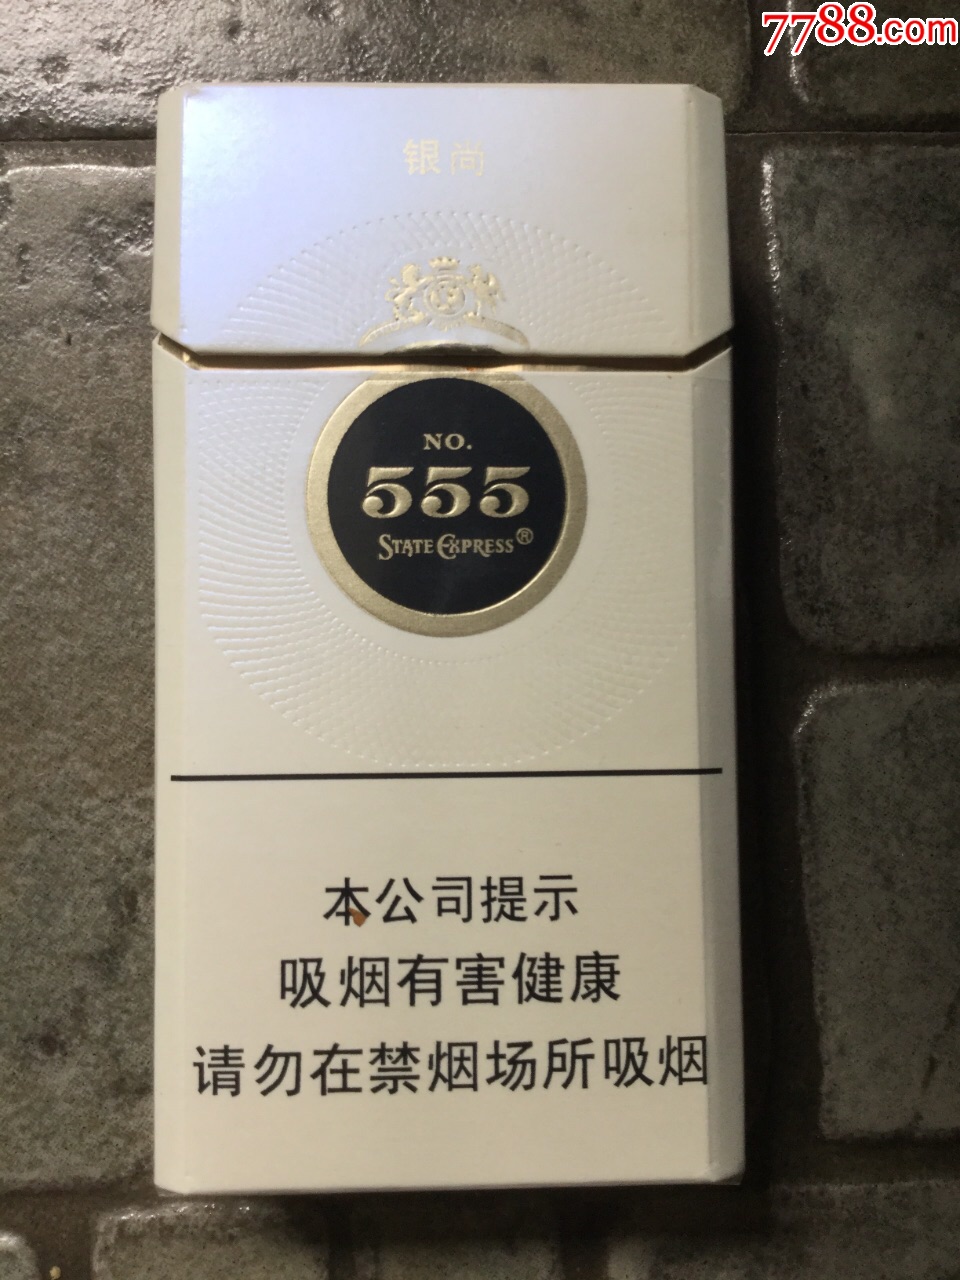 555弘博白色扁盒图片